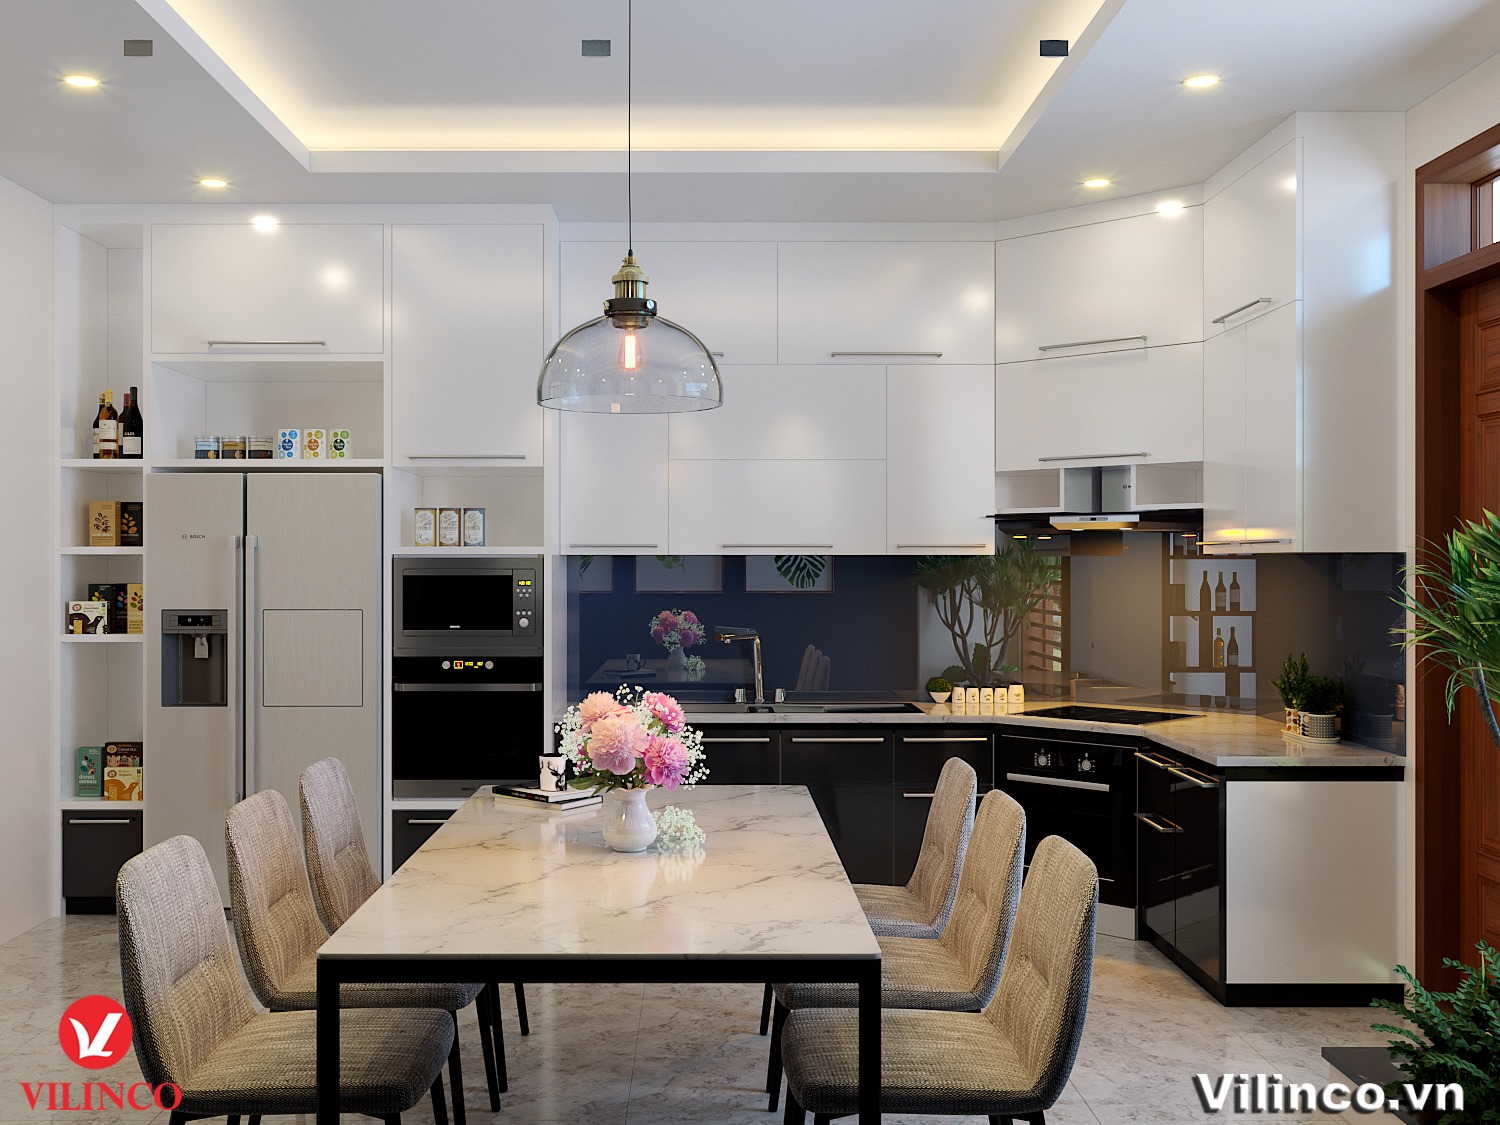 Trần thạch cao trang trí phòng bếp là xu hướng mới trong thiết kế nội thất hiện nay. Những mẫu trần thạch cao này giúp không gian trở nên đẹp hơn, sang trọng hơn và không kém phần tiện nghi. Hãy khám phá để tạo cho ngôi nhà của bạn một phong cách trang trí đẳng cấp!